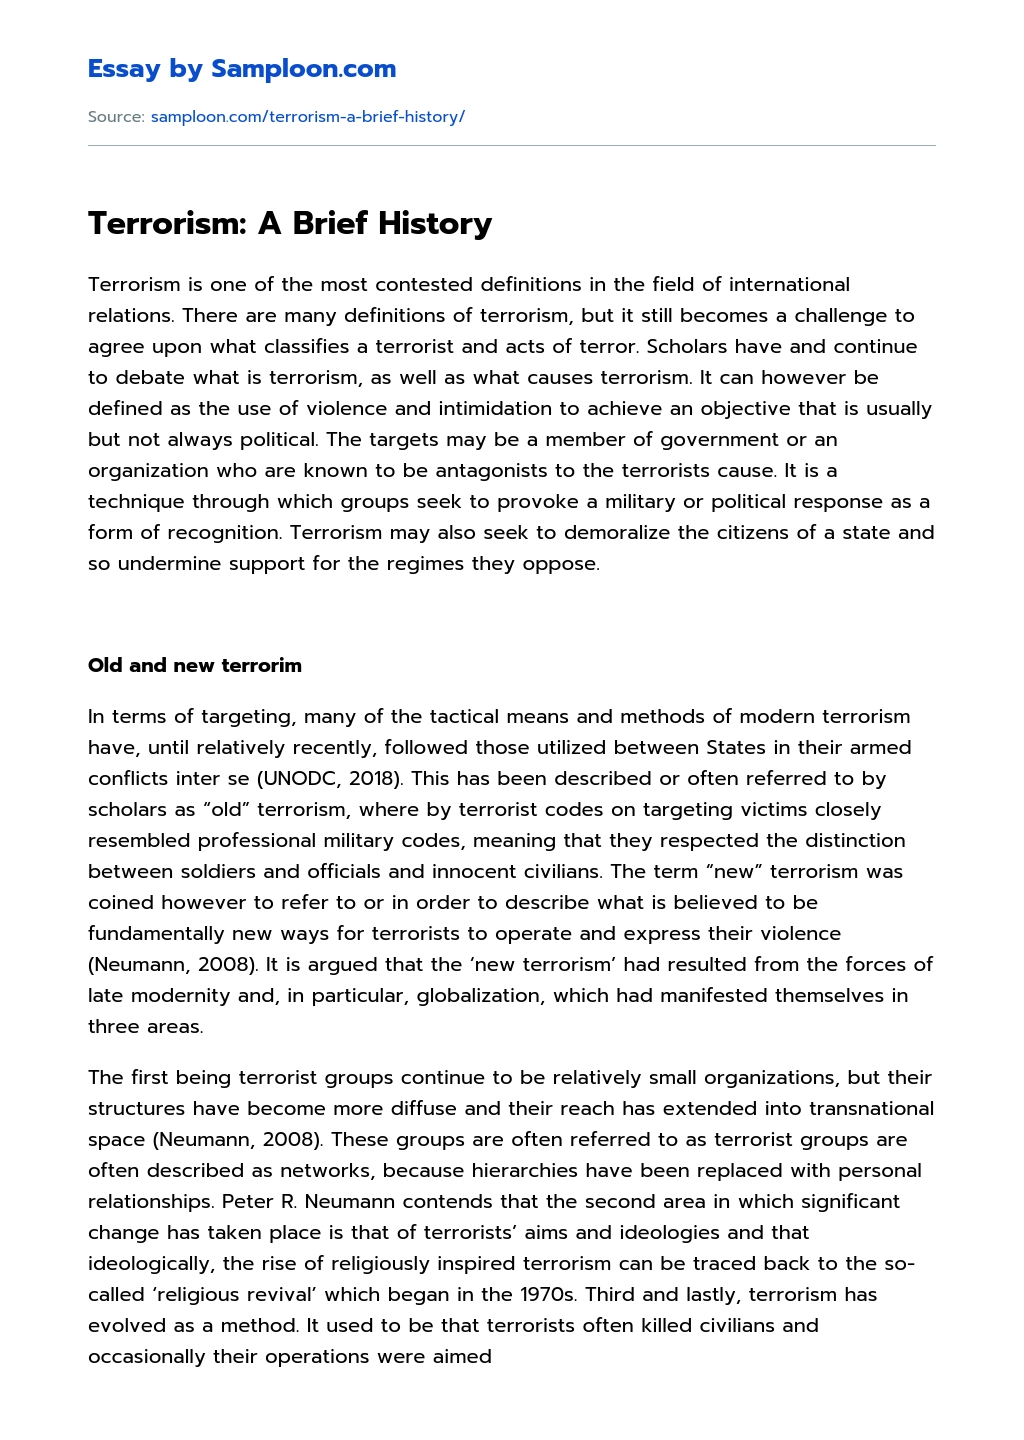 Terrorism: A Brief History essay